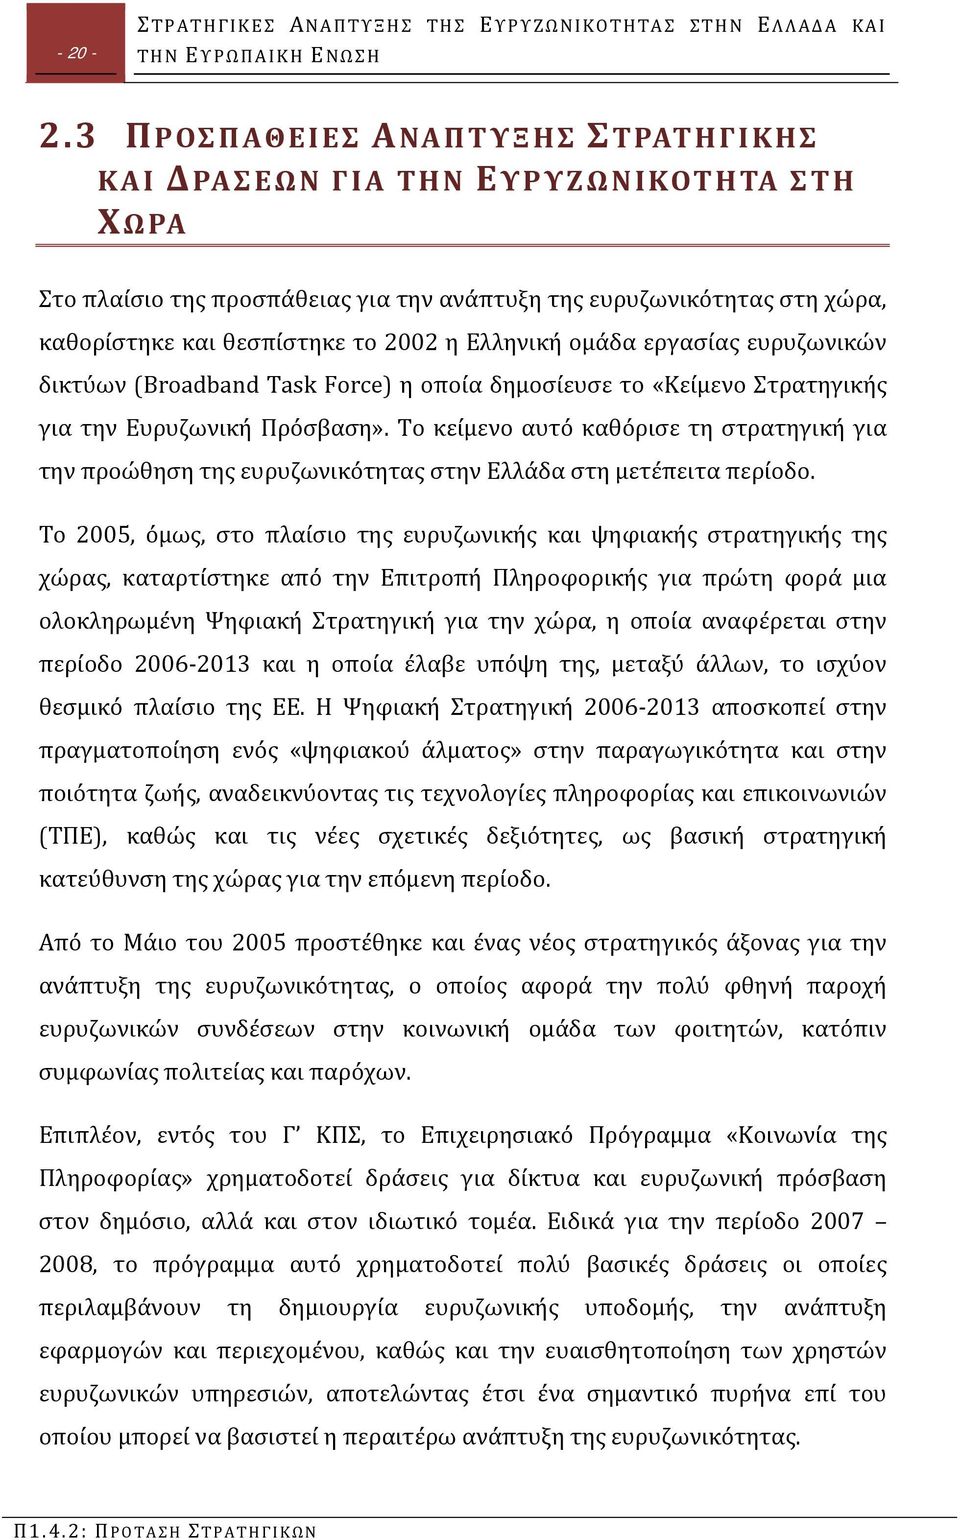 Ελληνική ομάδα εργασίας ευρυζωνικών δικτύων (Broadband Task Force) η οποία δημοσίευσε το «Κείμενο Στρατηγικής για την Ευρυζωνική Πρόσβαση».